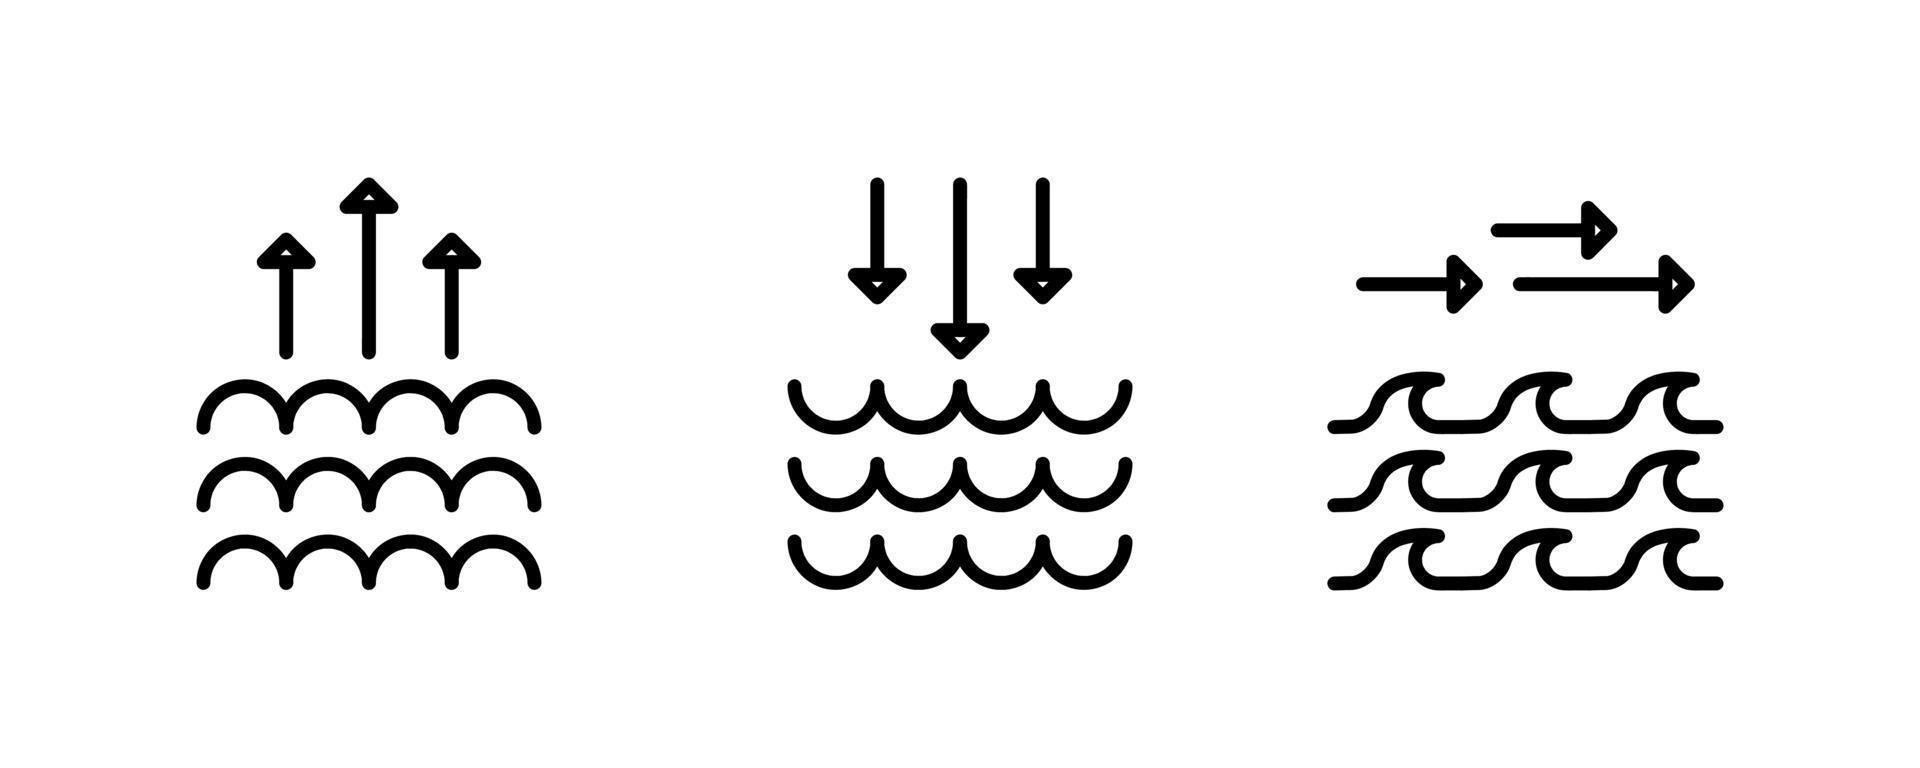 mudança de pressão do ar de diferentes ondas do mar com a mesma espessura de linha. fatores como nordeste e blackland mudam a direção das ondas. Conjunto de 3 peças de ícones modernos do mar. vetor